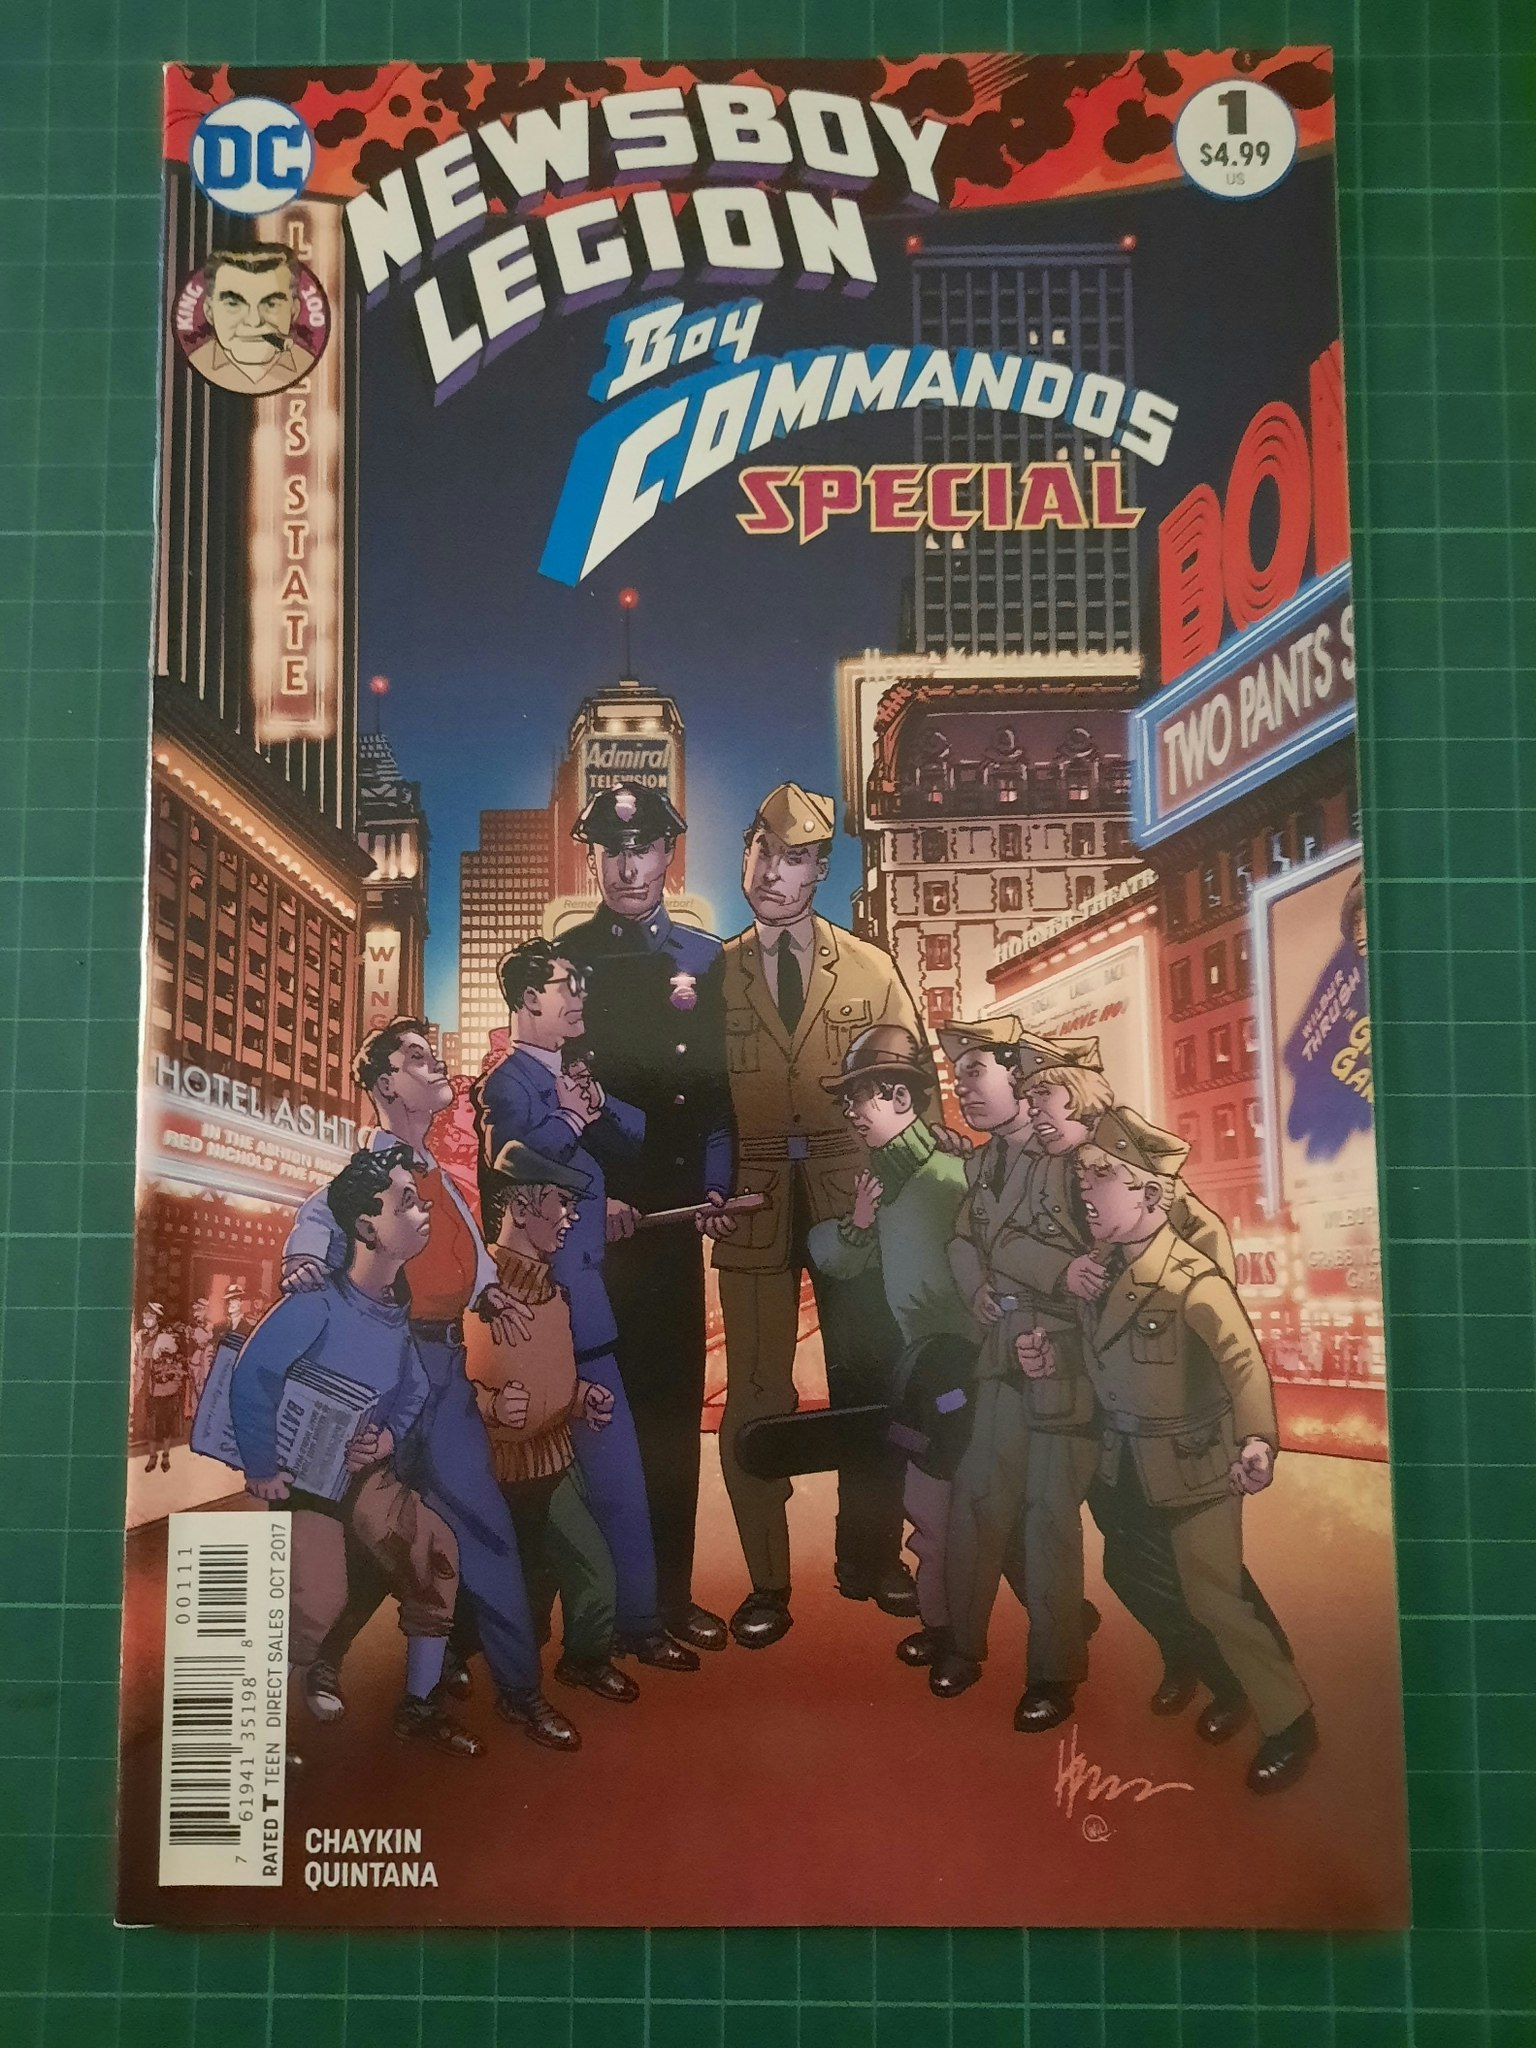 Newsboy legion, boy commandos special #01